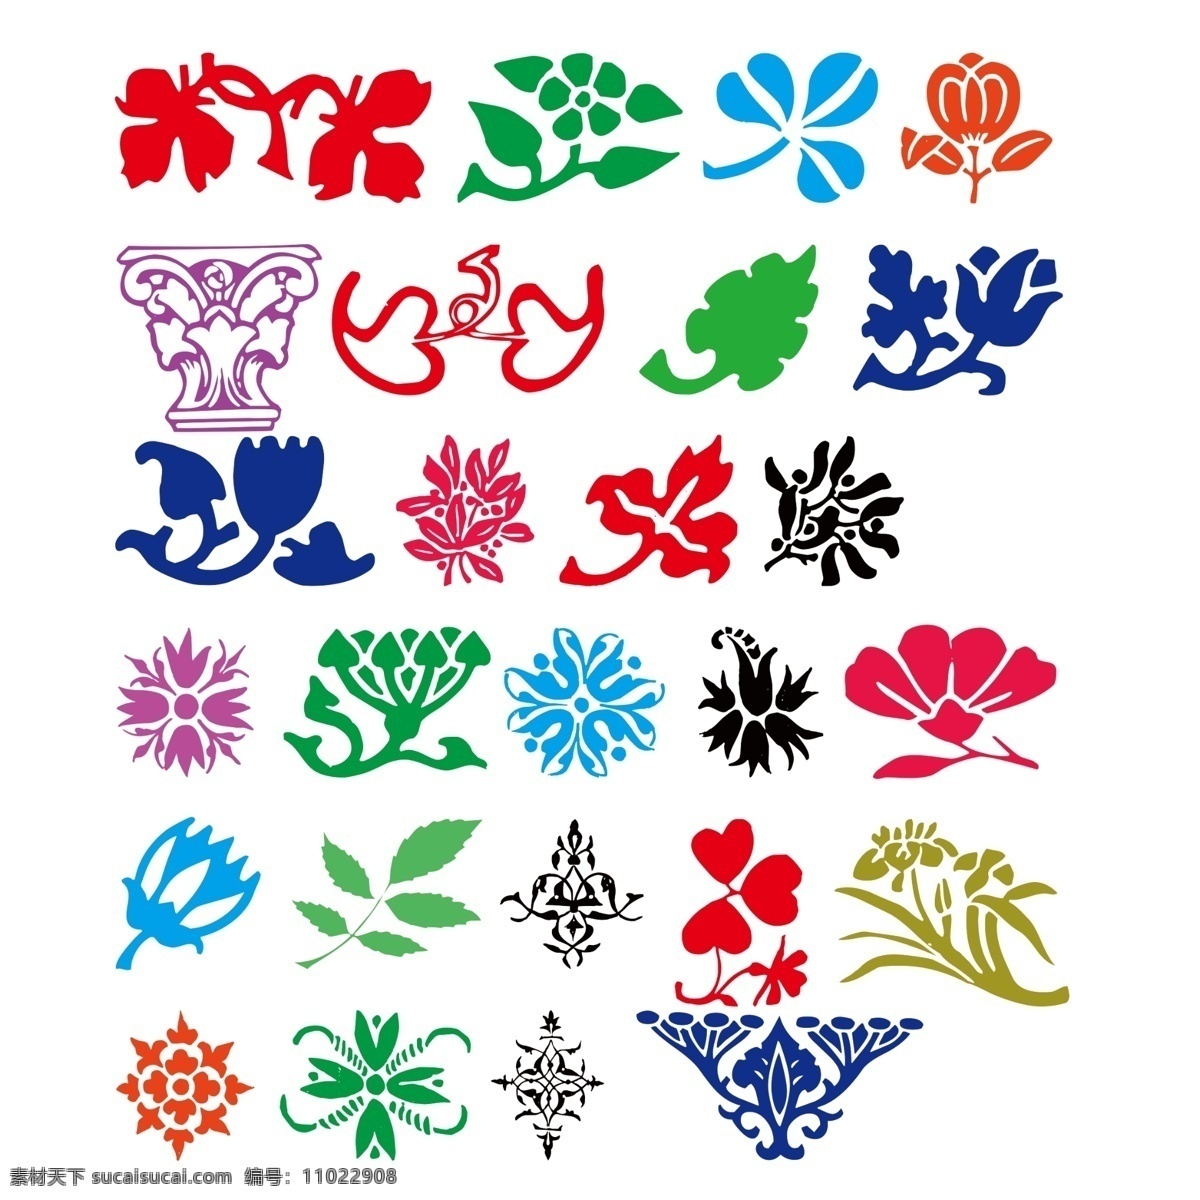 各种形状 插图 彩色 矢量图 花边 小花 小草 吉祥图案 对称图 树叶 五颜六色 花花草草